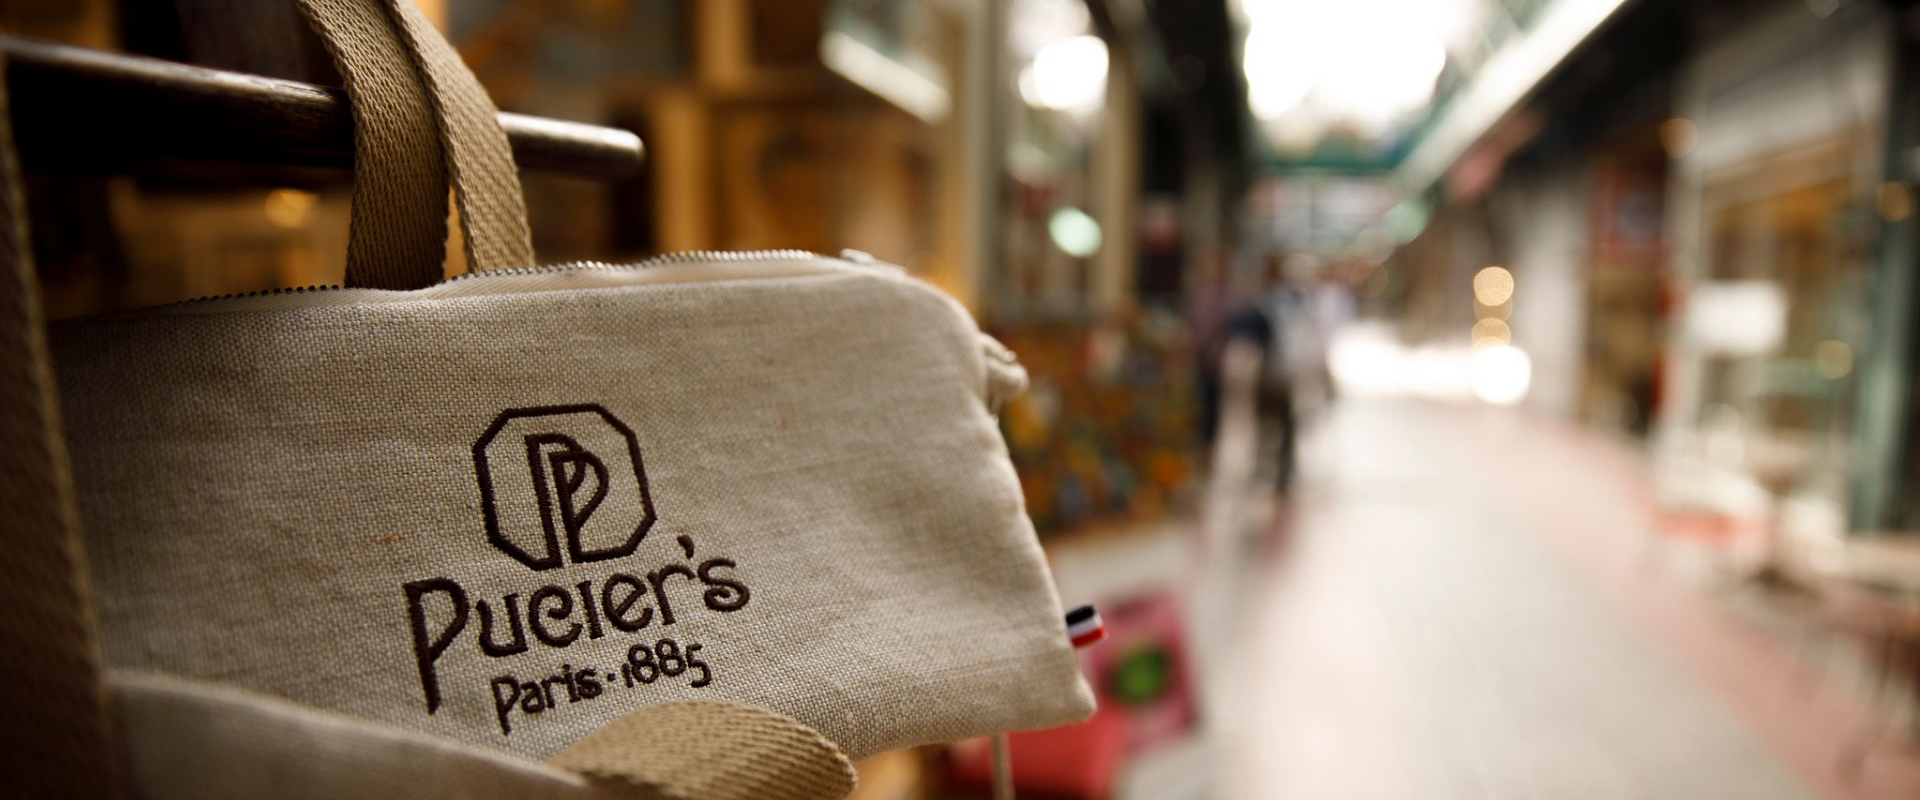 Pucier's Paris, marque de produits authentiques et élégants